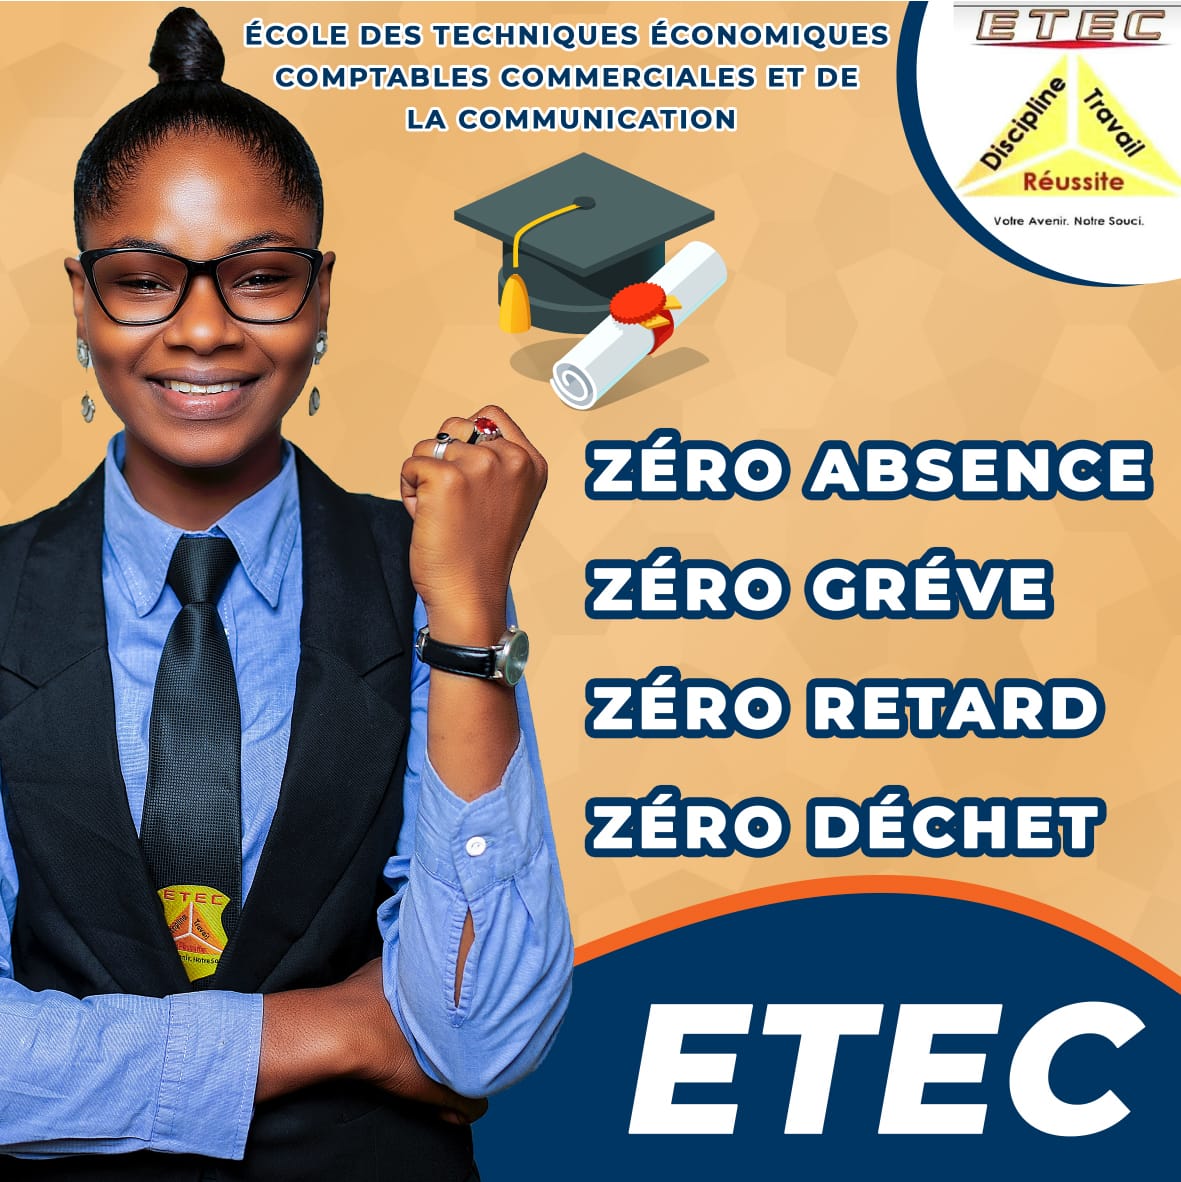 Bienvenue à l'ETEC